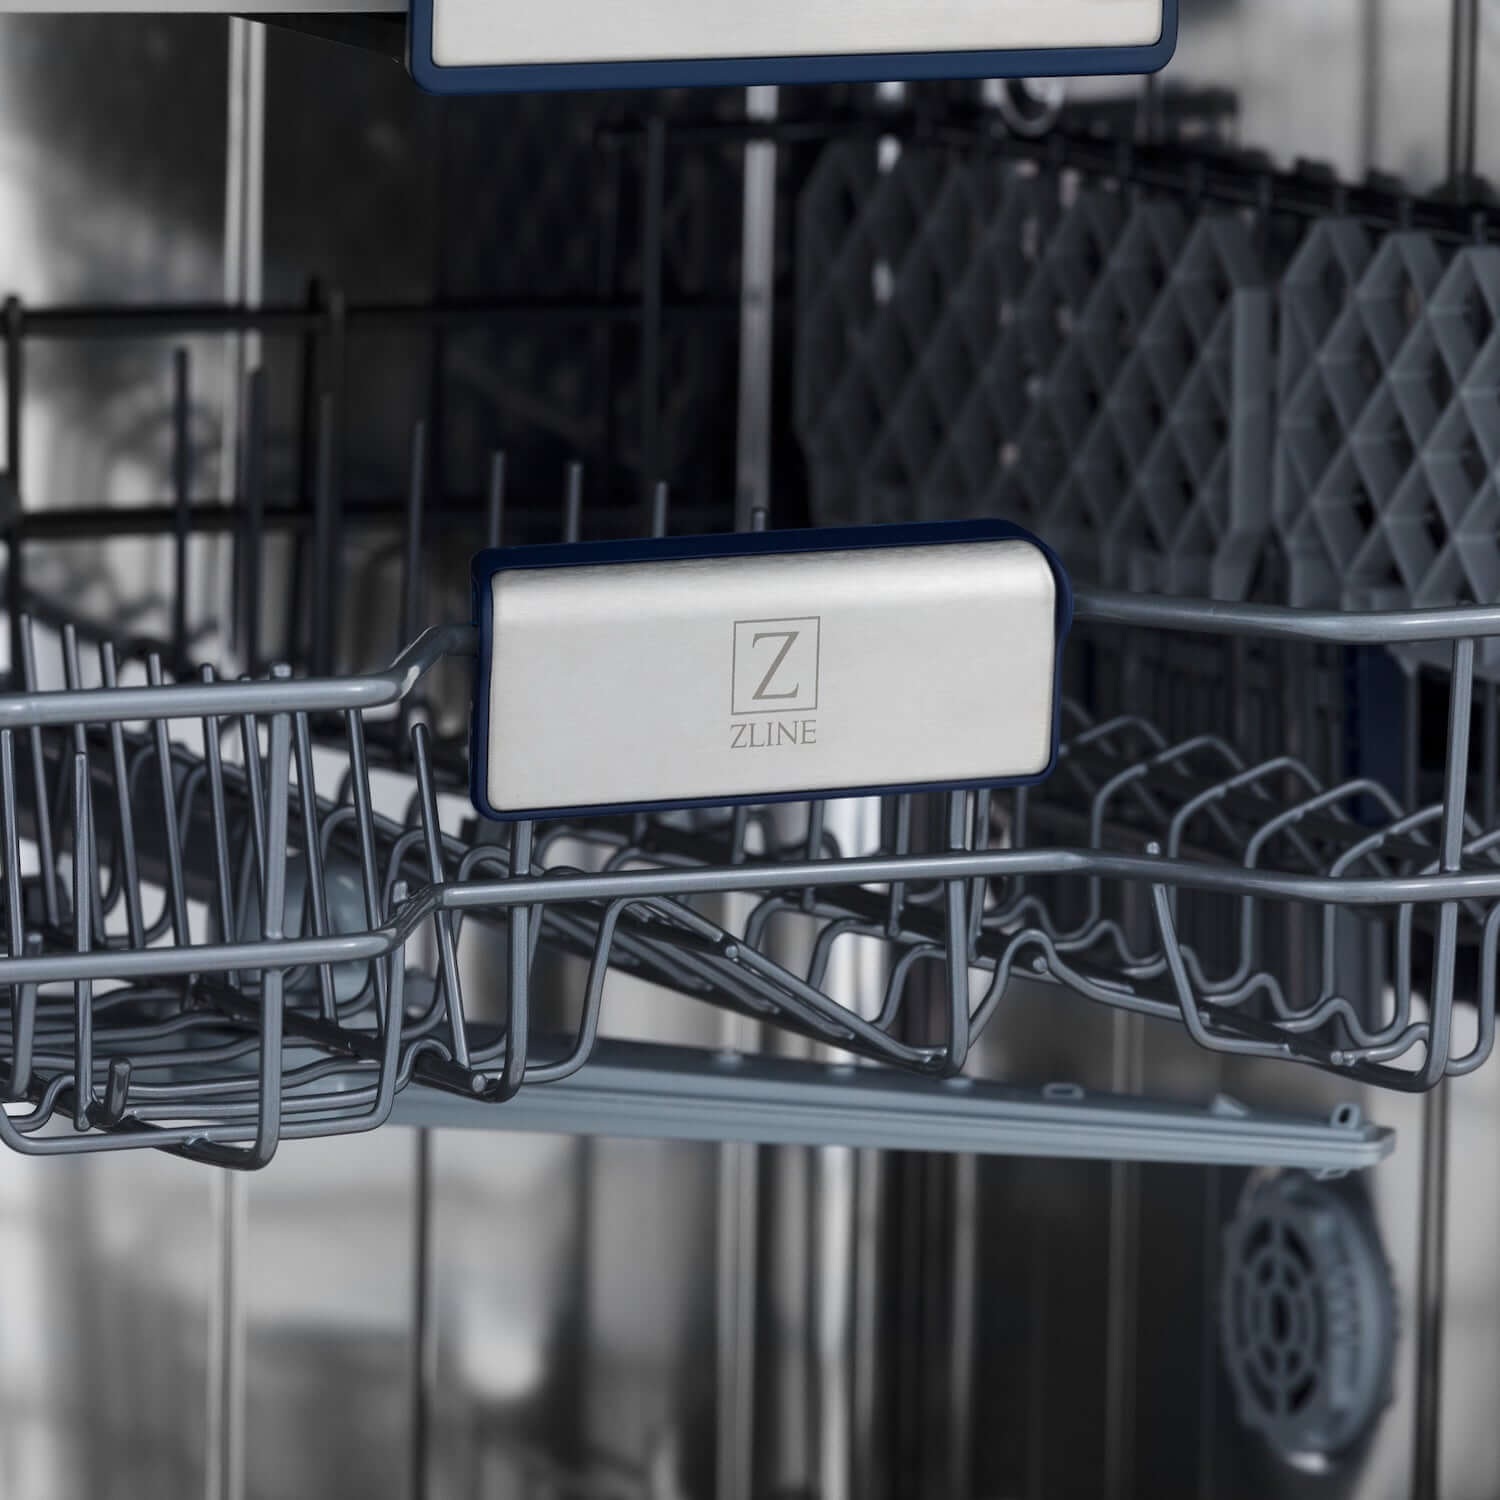 ZLINE logo on built-in dishwasher rack.